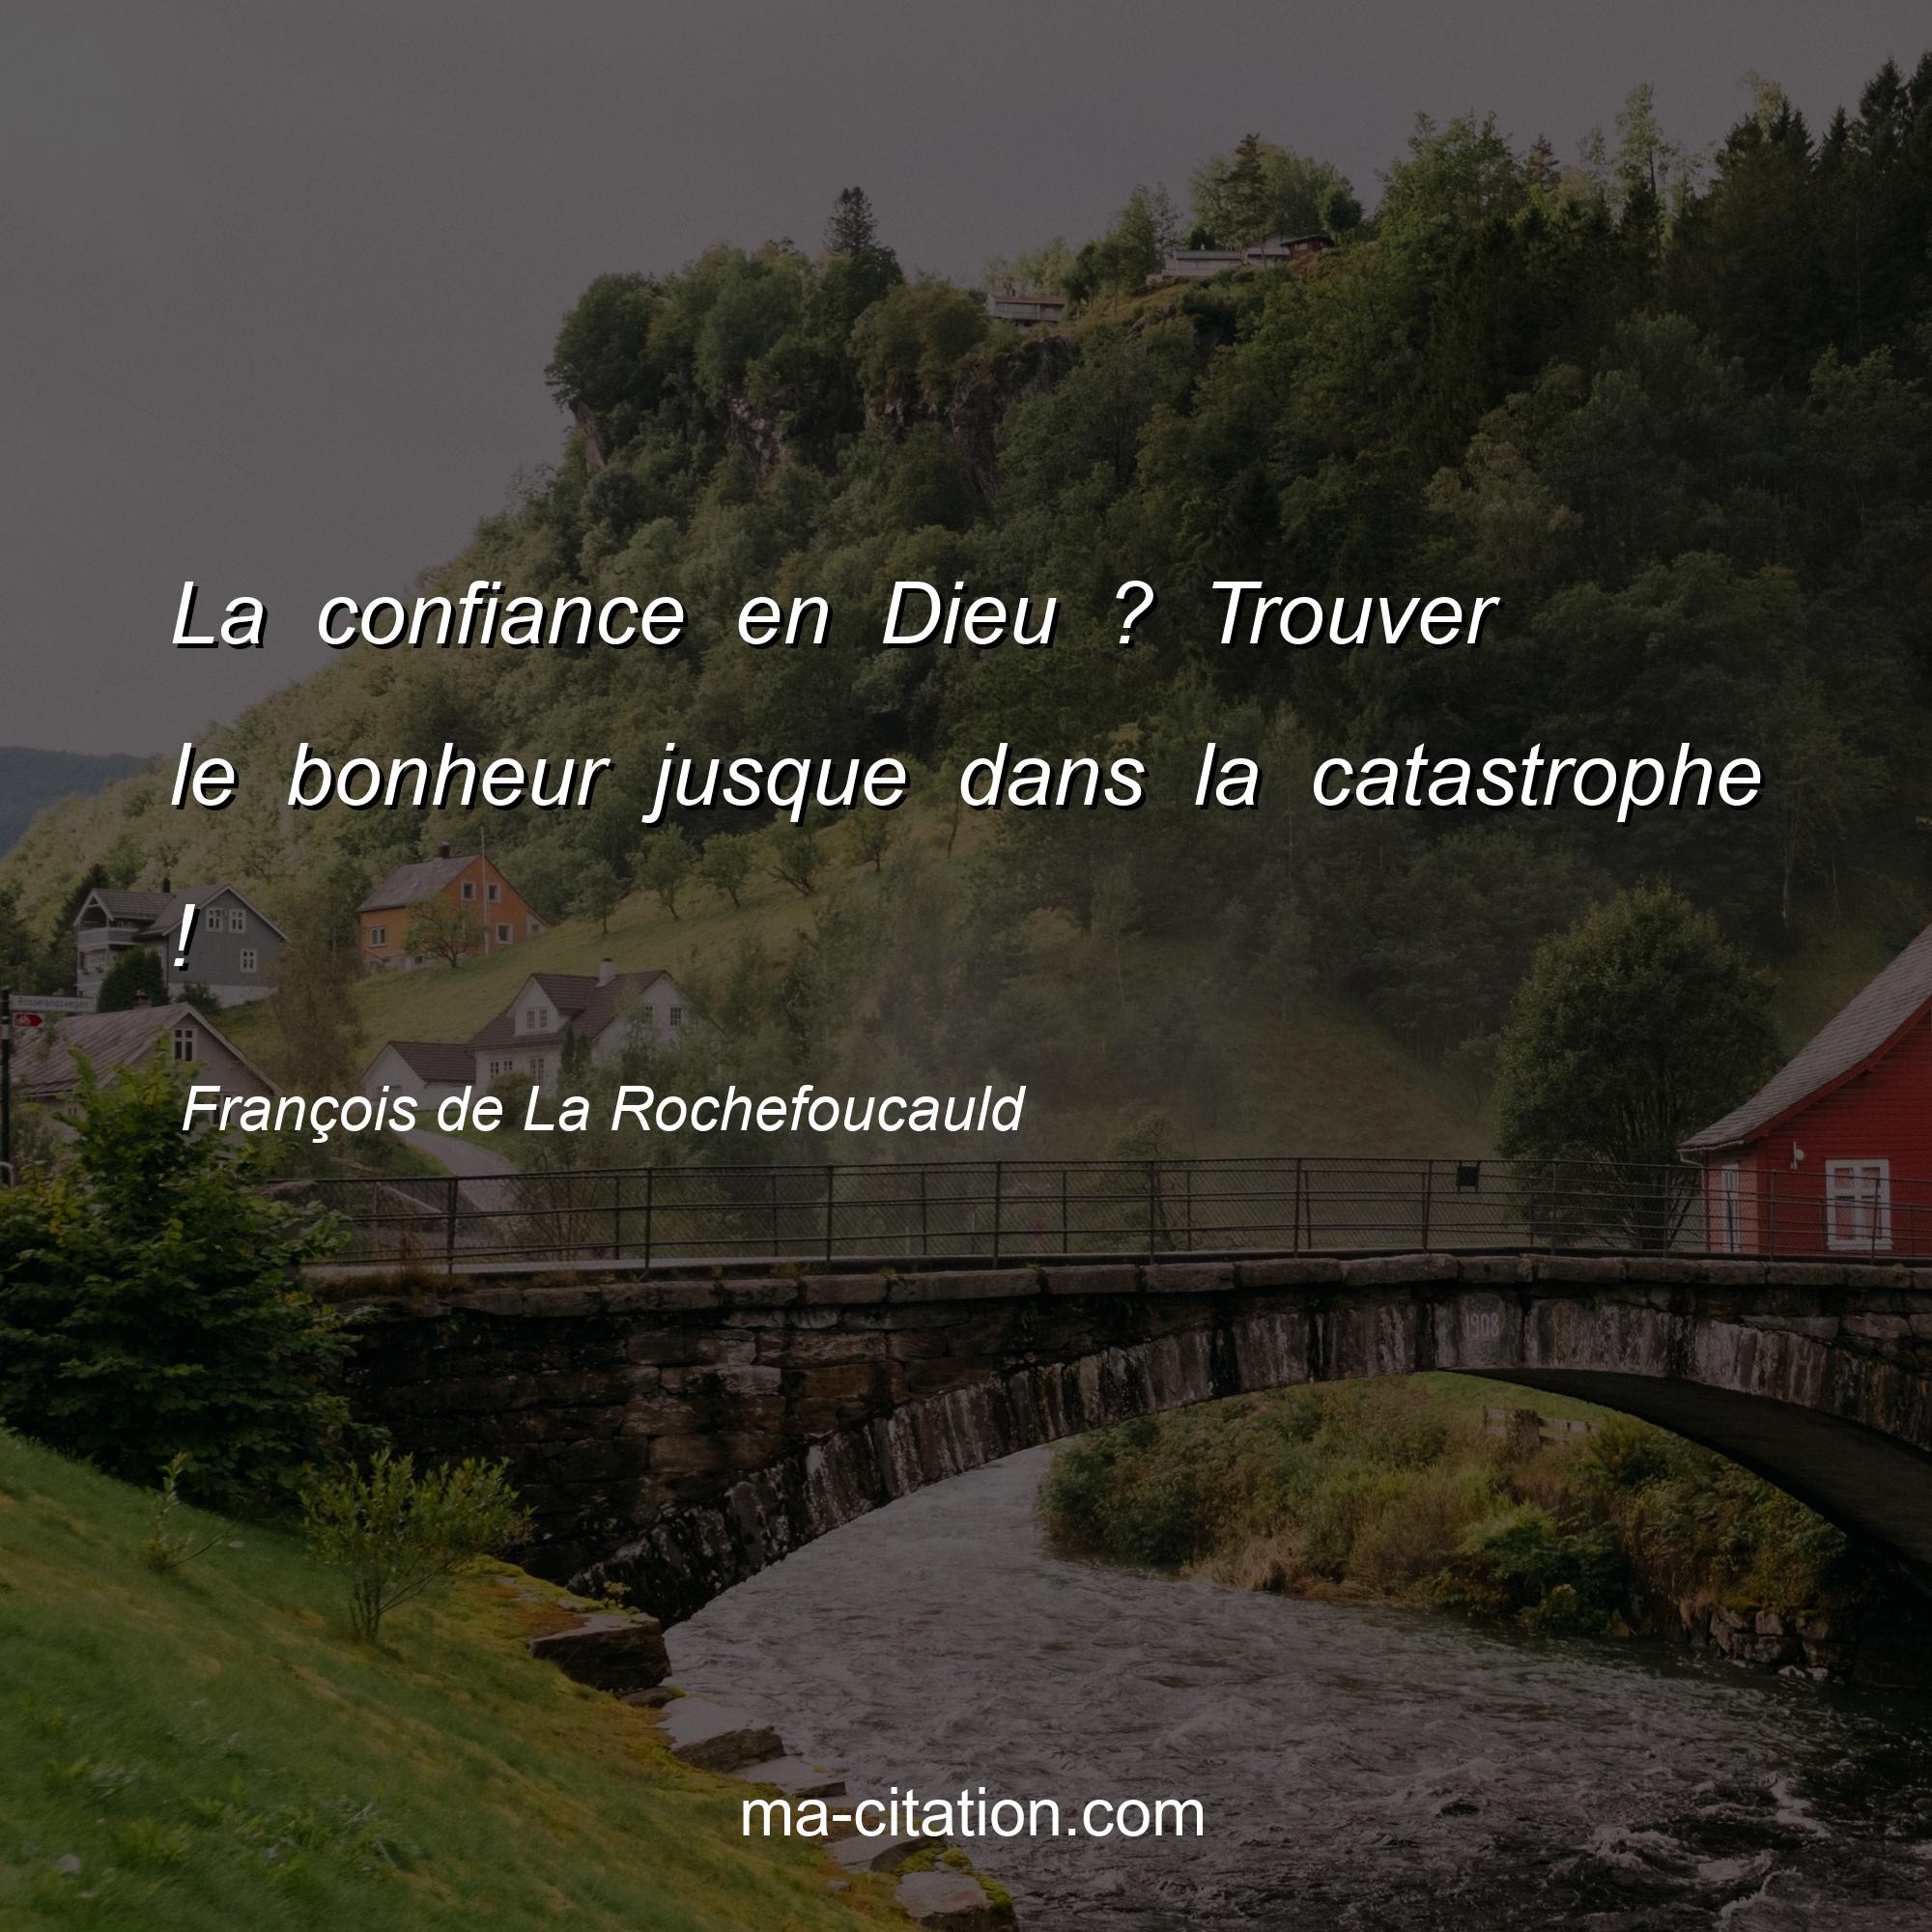 François de La Rochefoucauld : La confiance en Dieu ? Trouver le bonheur jusque dans la catastrophe !